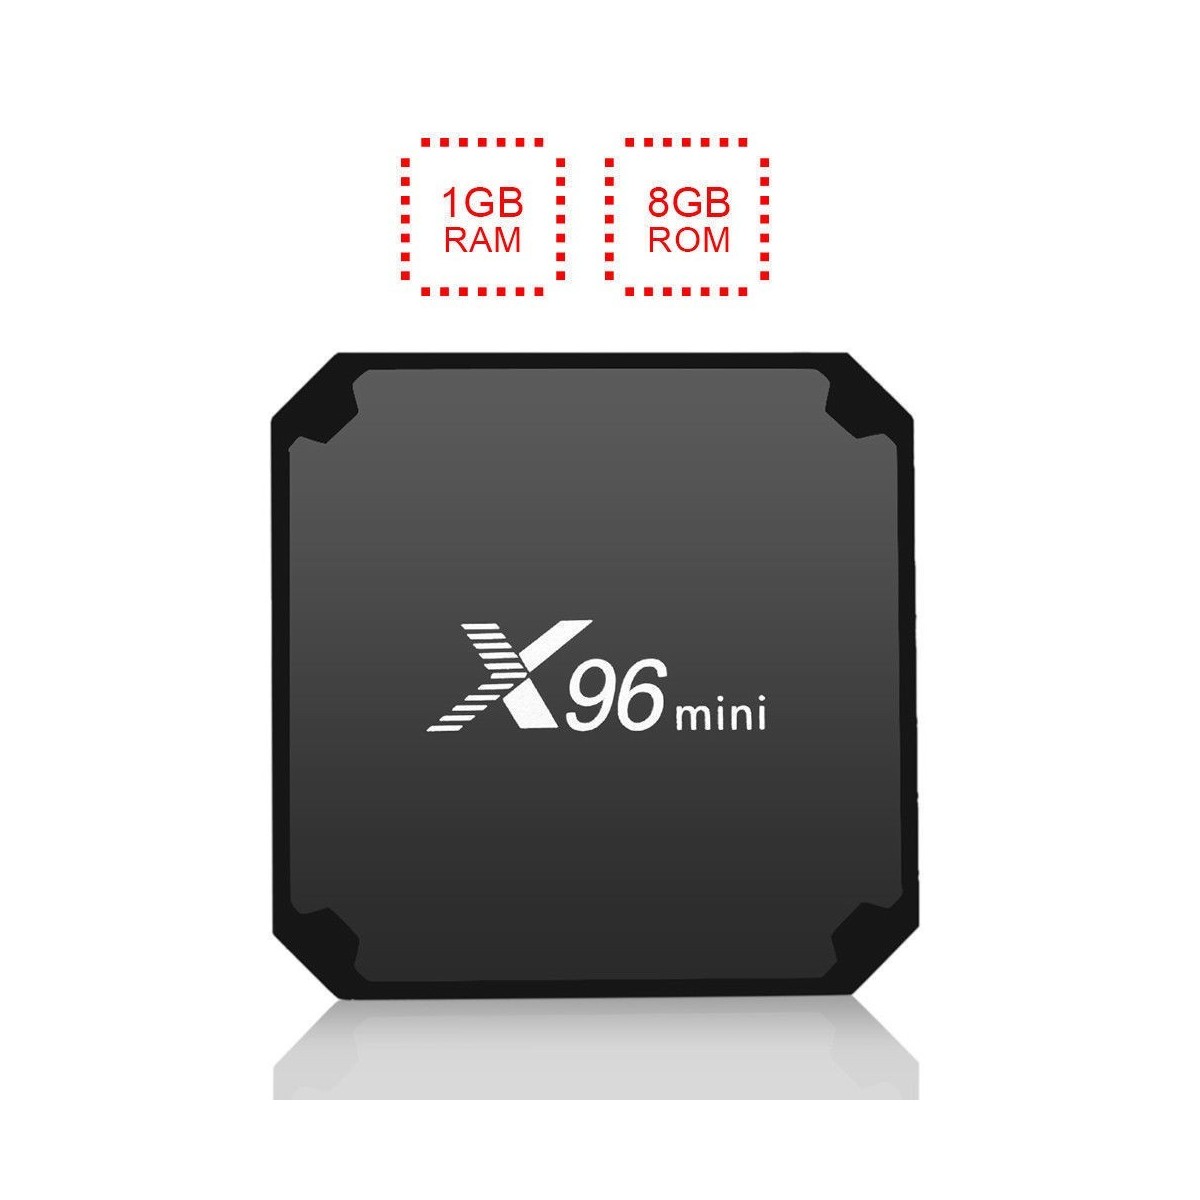 Décodeur multimédias Smart TV Box Android 7.1 X96 Mini 1G/8G